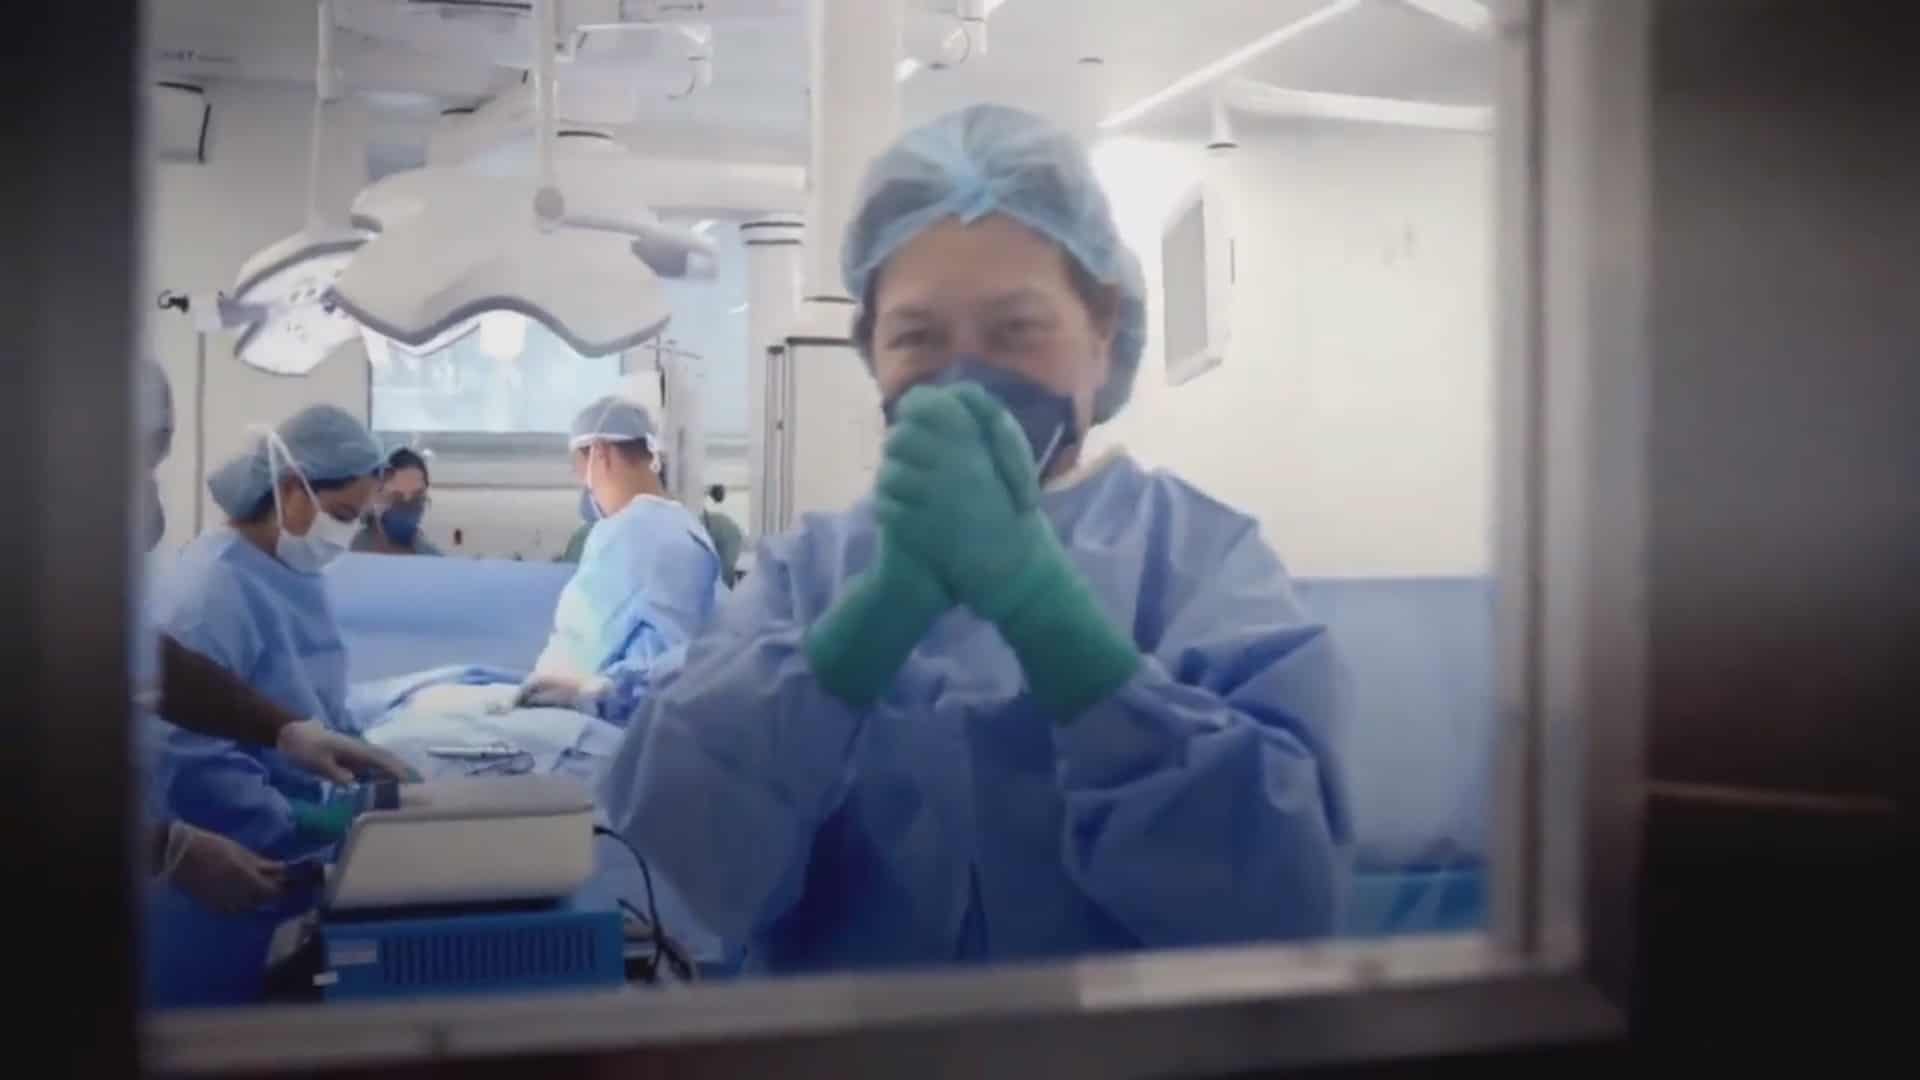 Com O Hospital, Record lança série jornalística médica em meio à pandemia de Covid